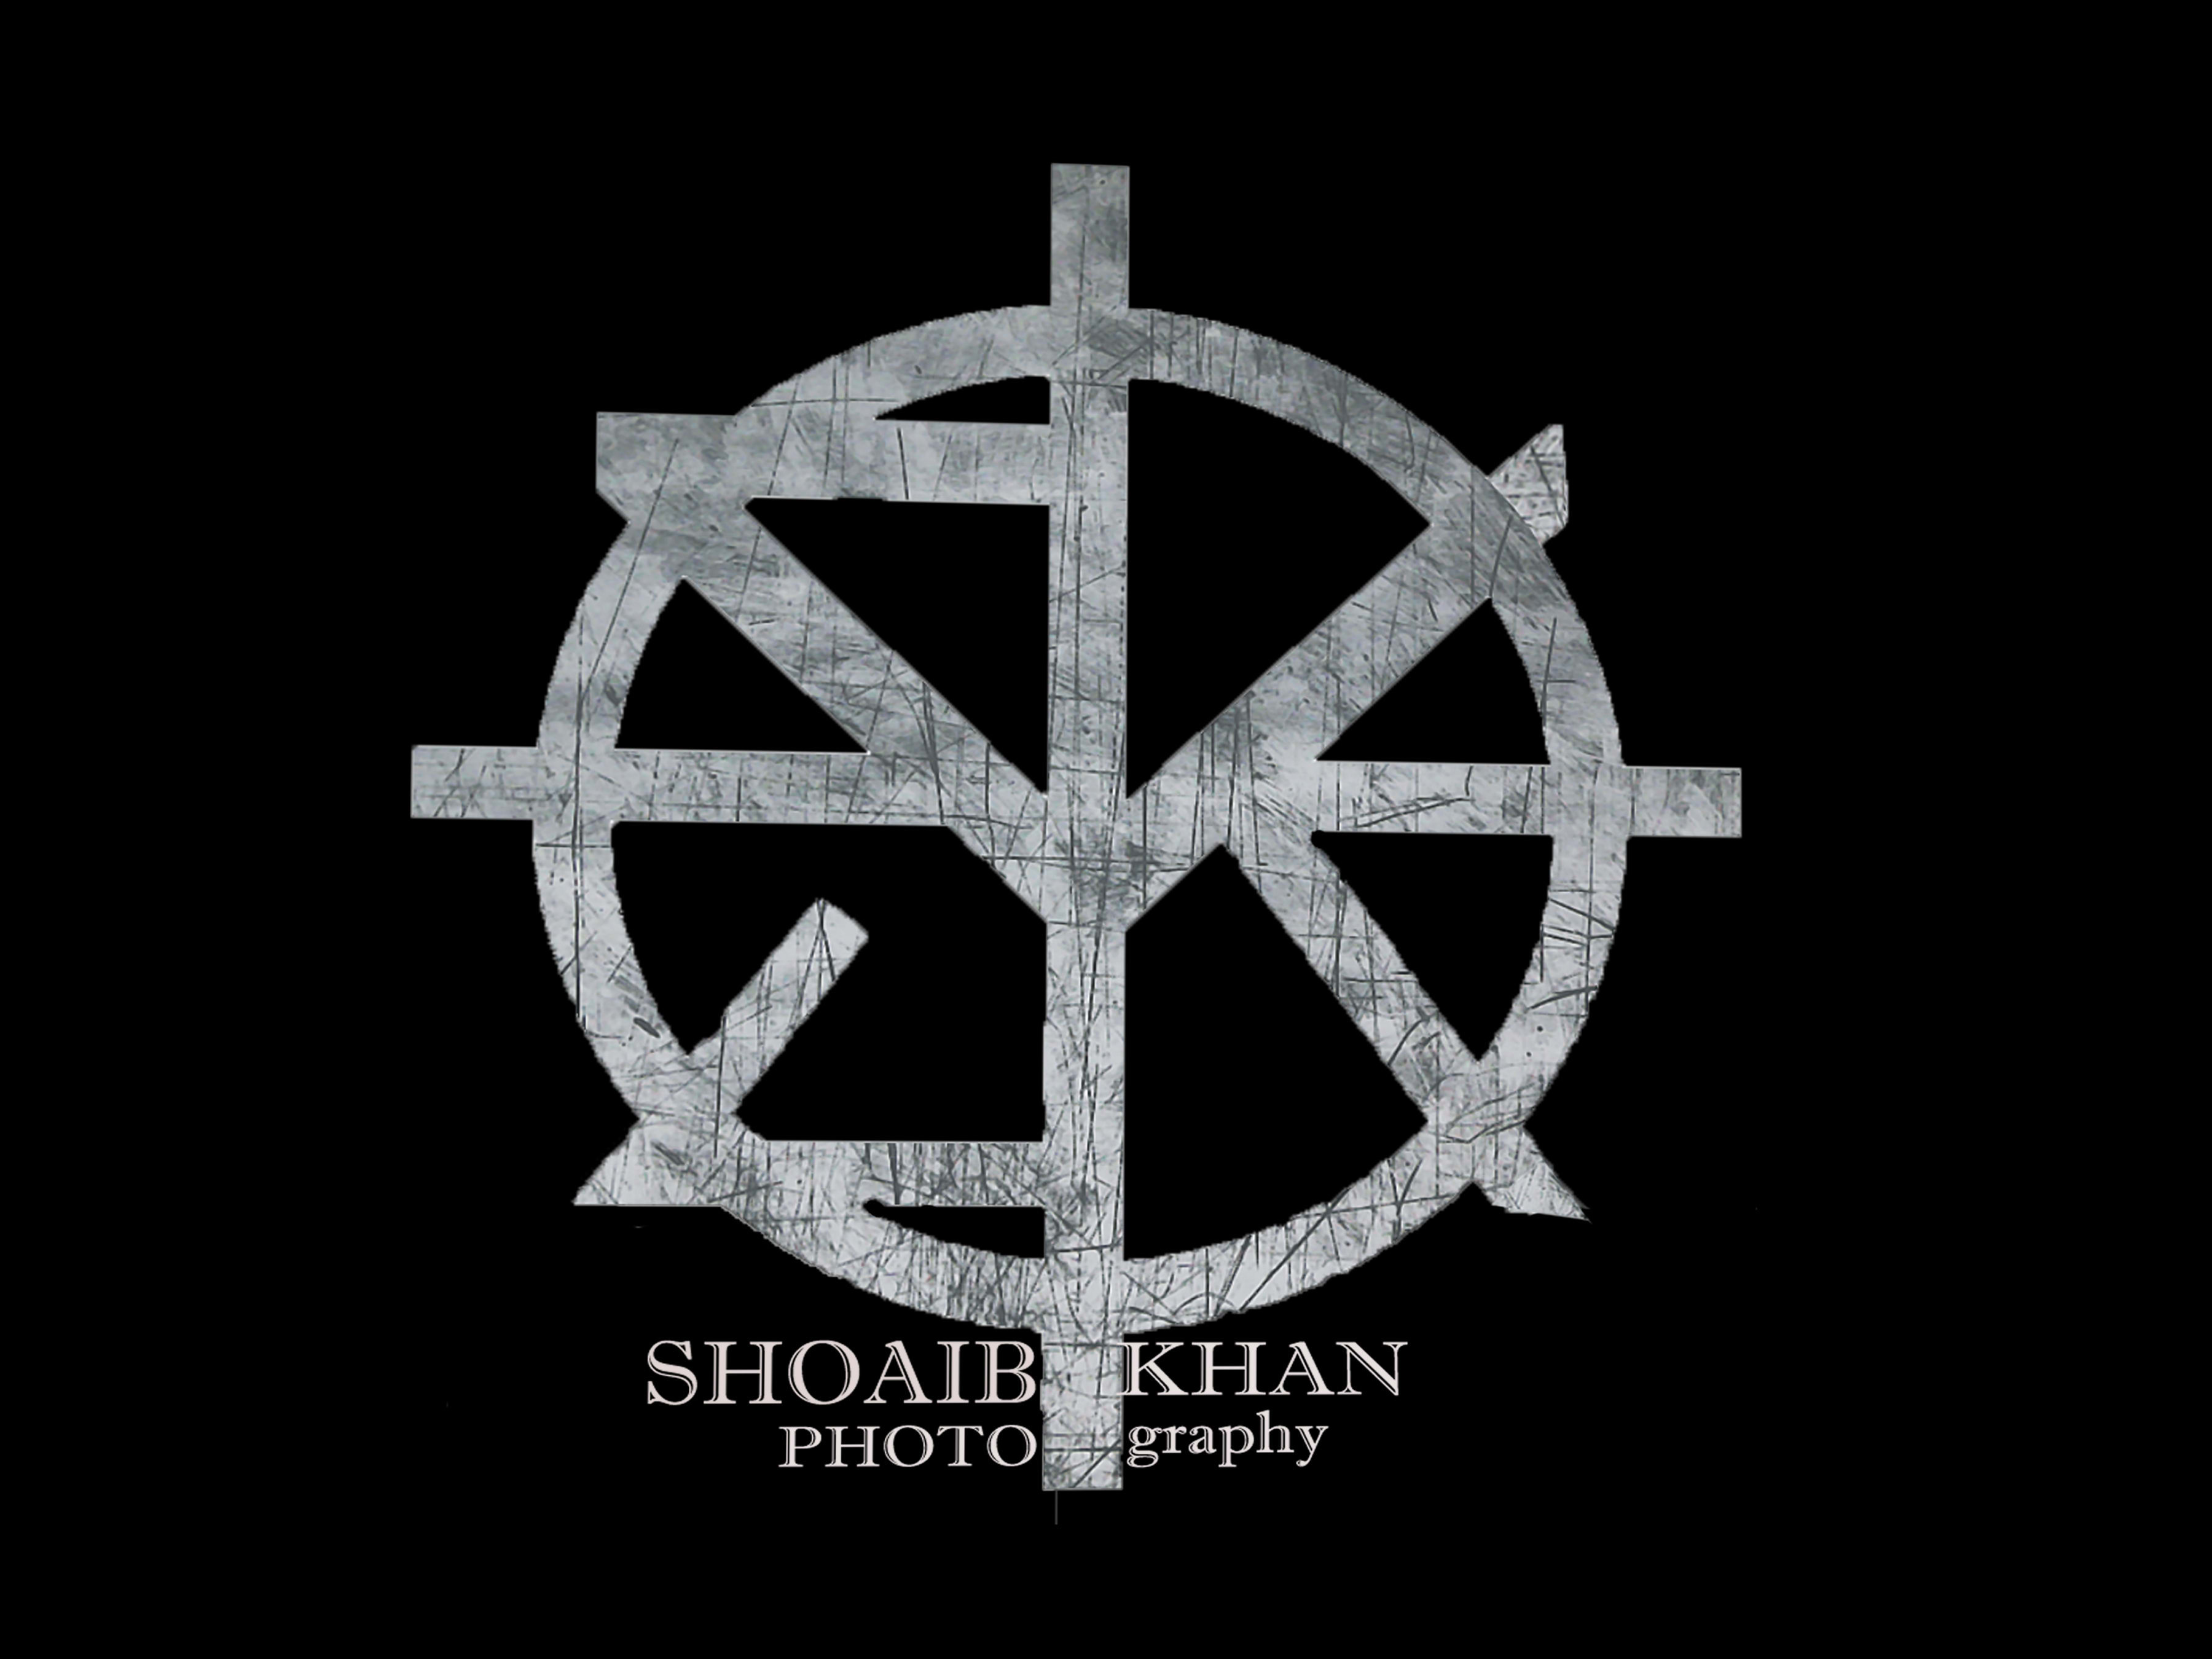 Shoaibkhan Photography